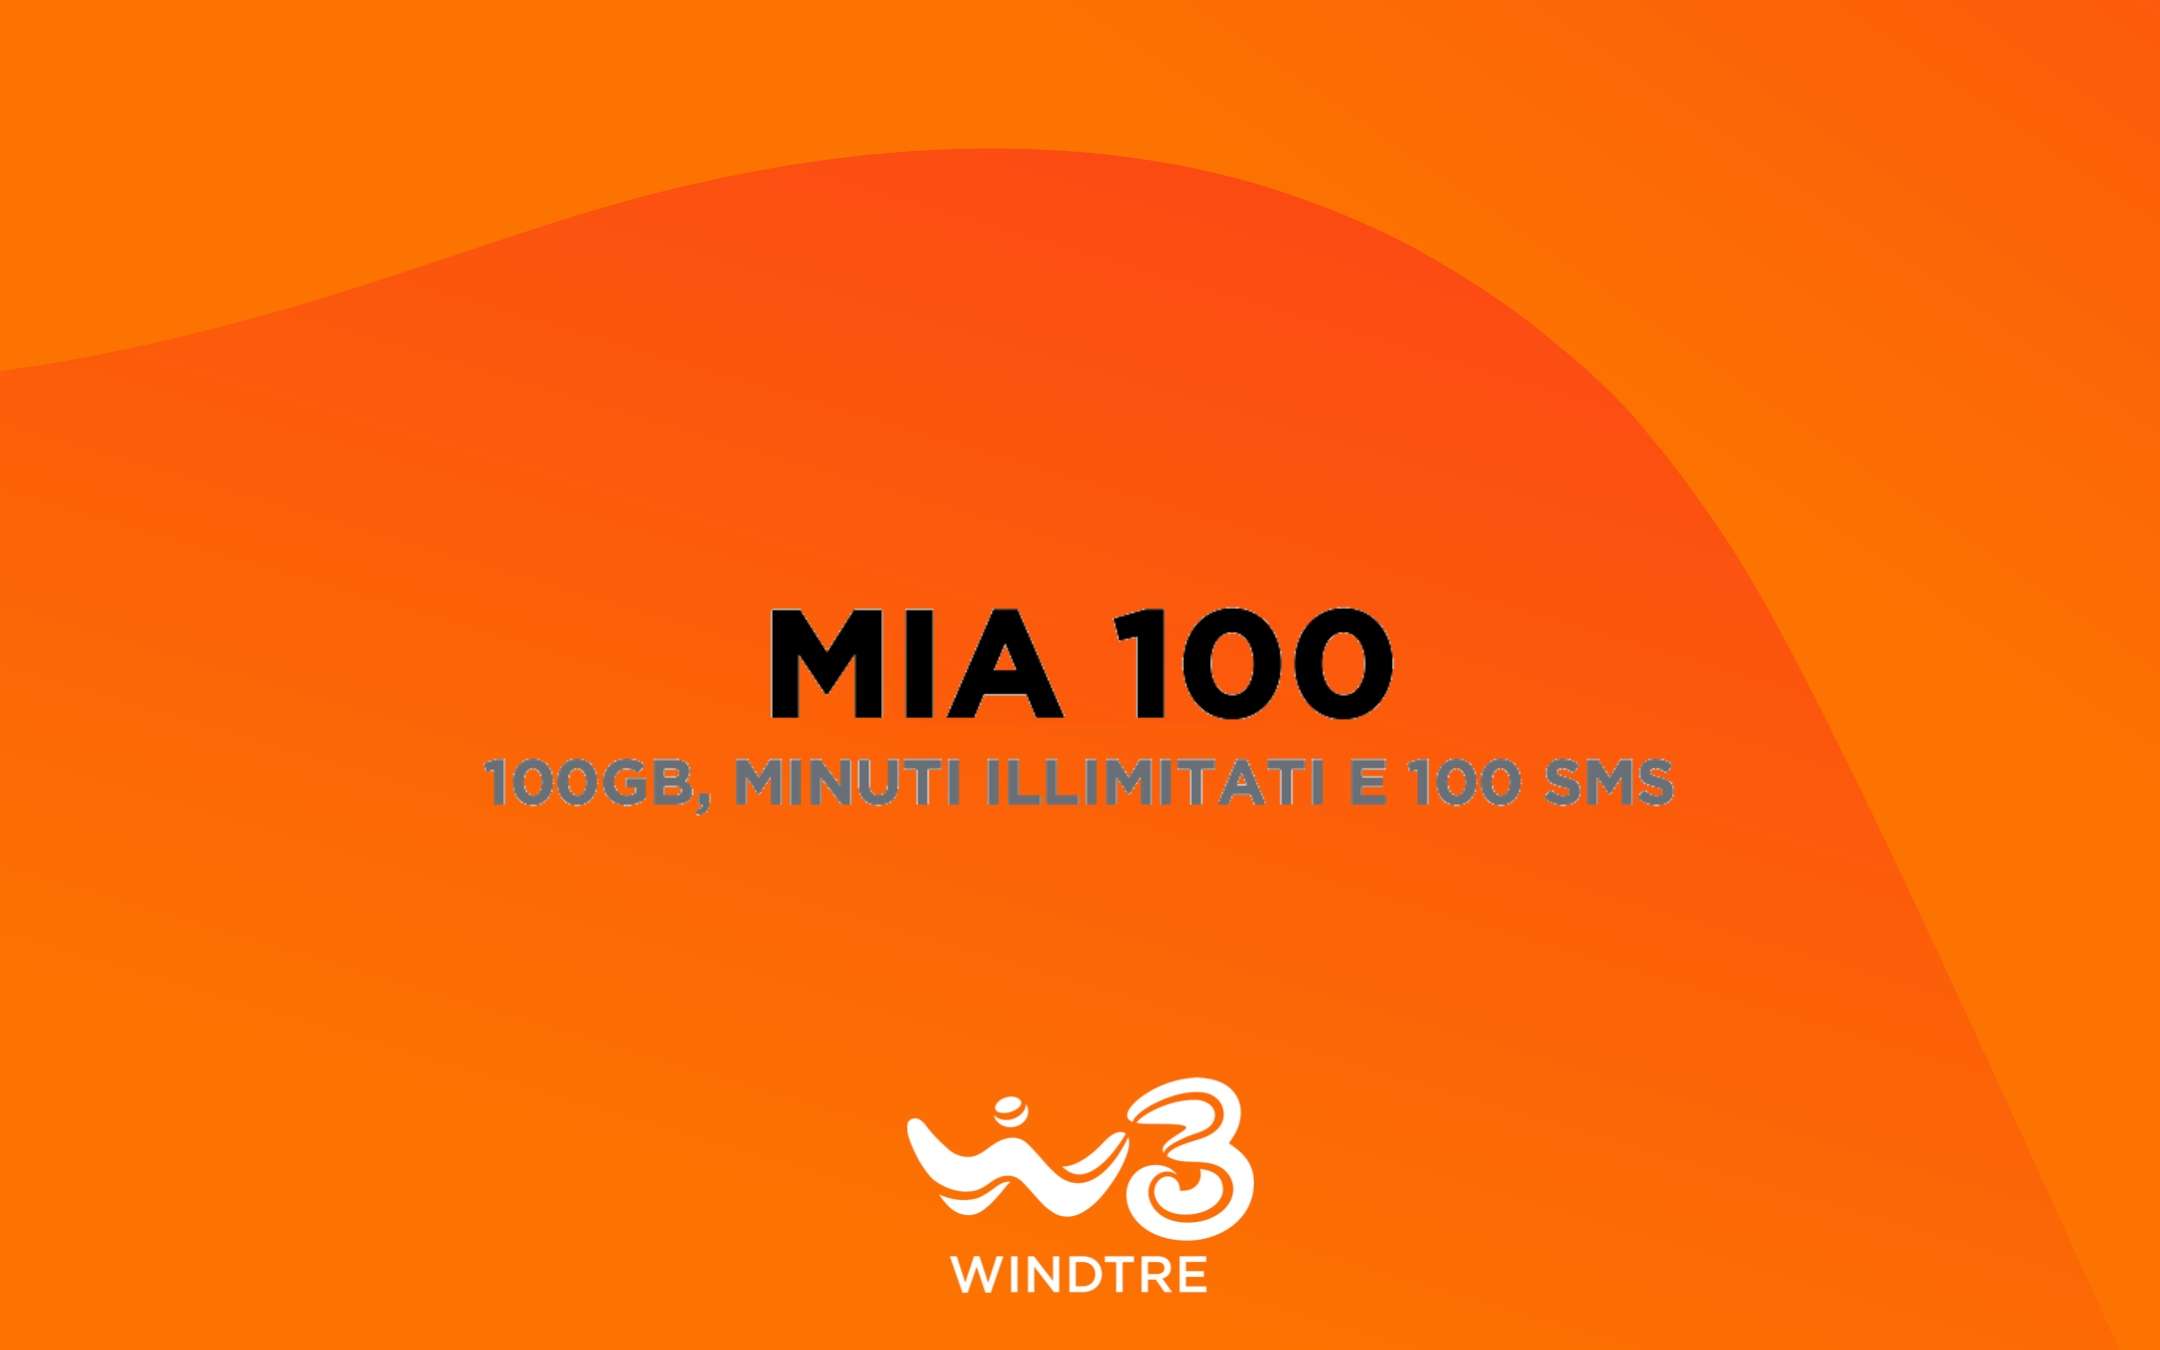 MIA 100: PROMO SHOCK per i già clienti WINDTRE